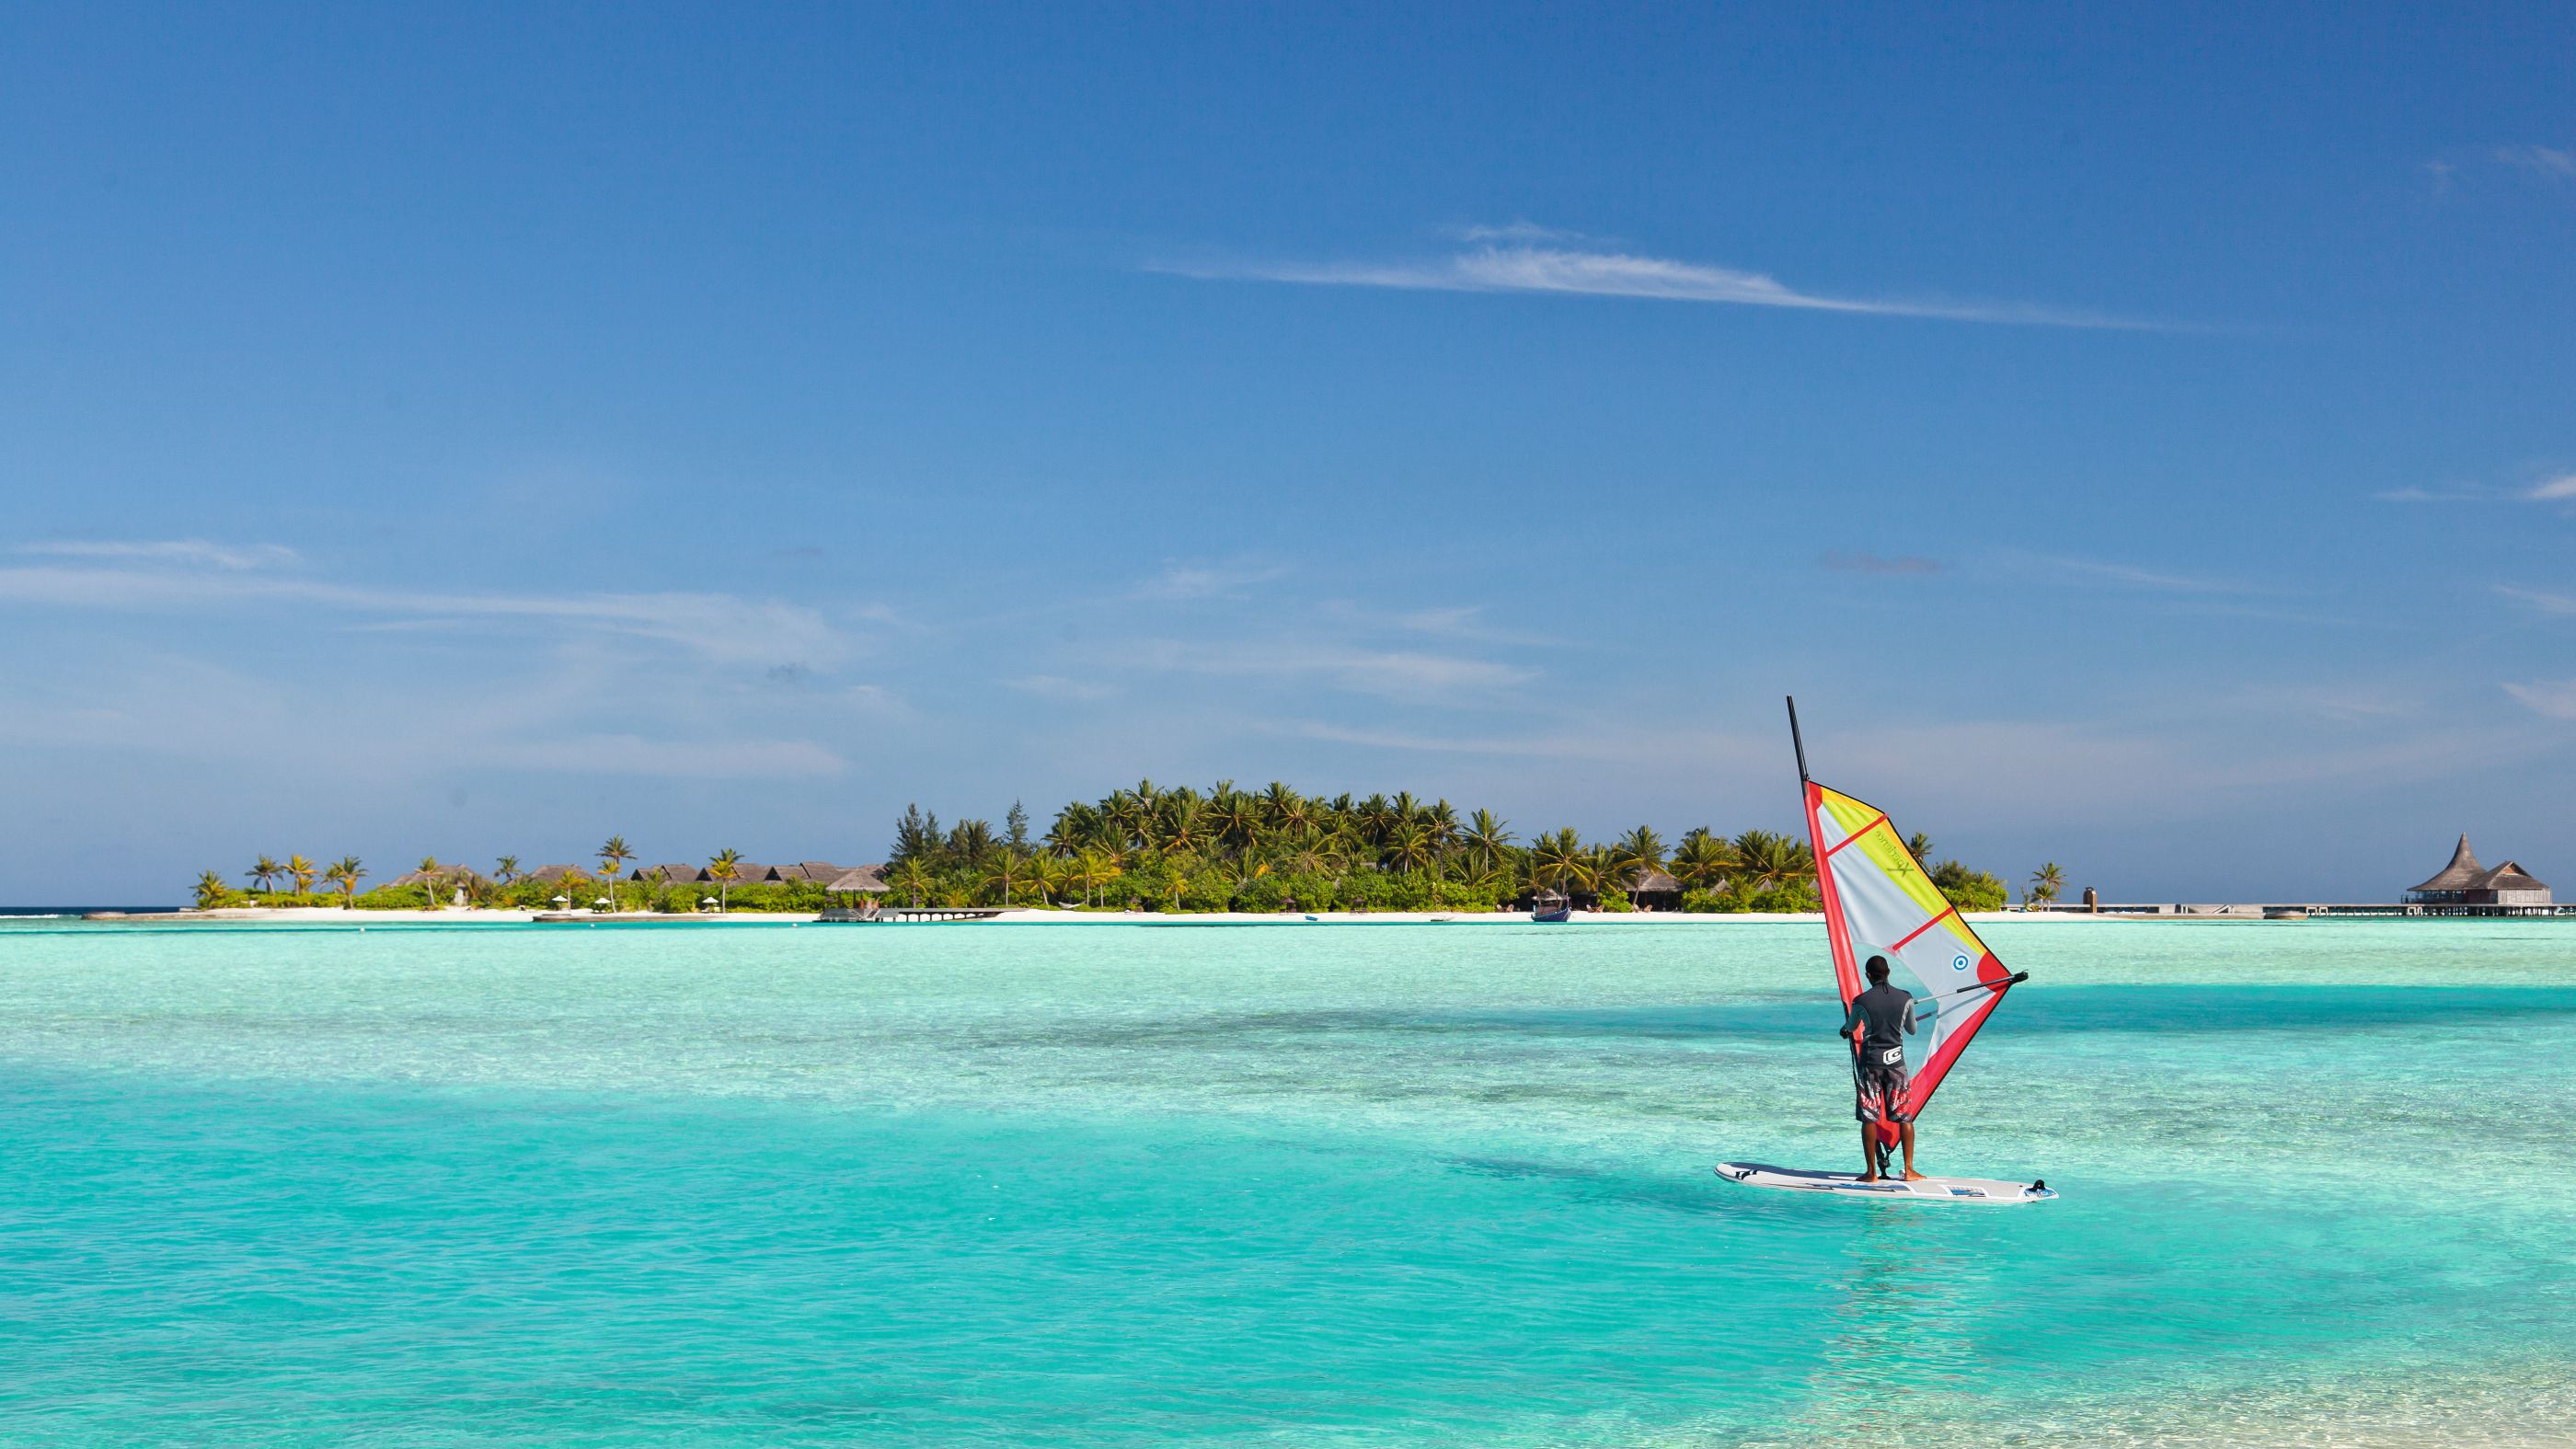 A windsurfer at Naladhu, Maldives